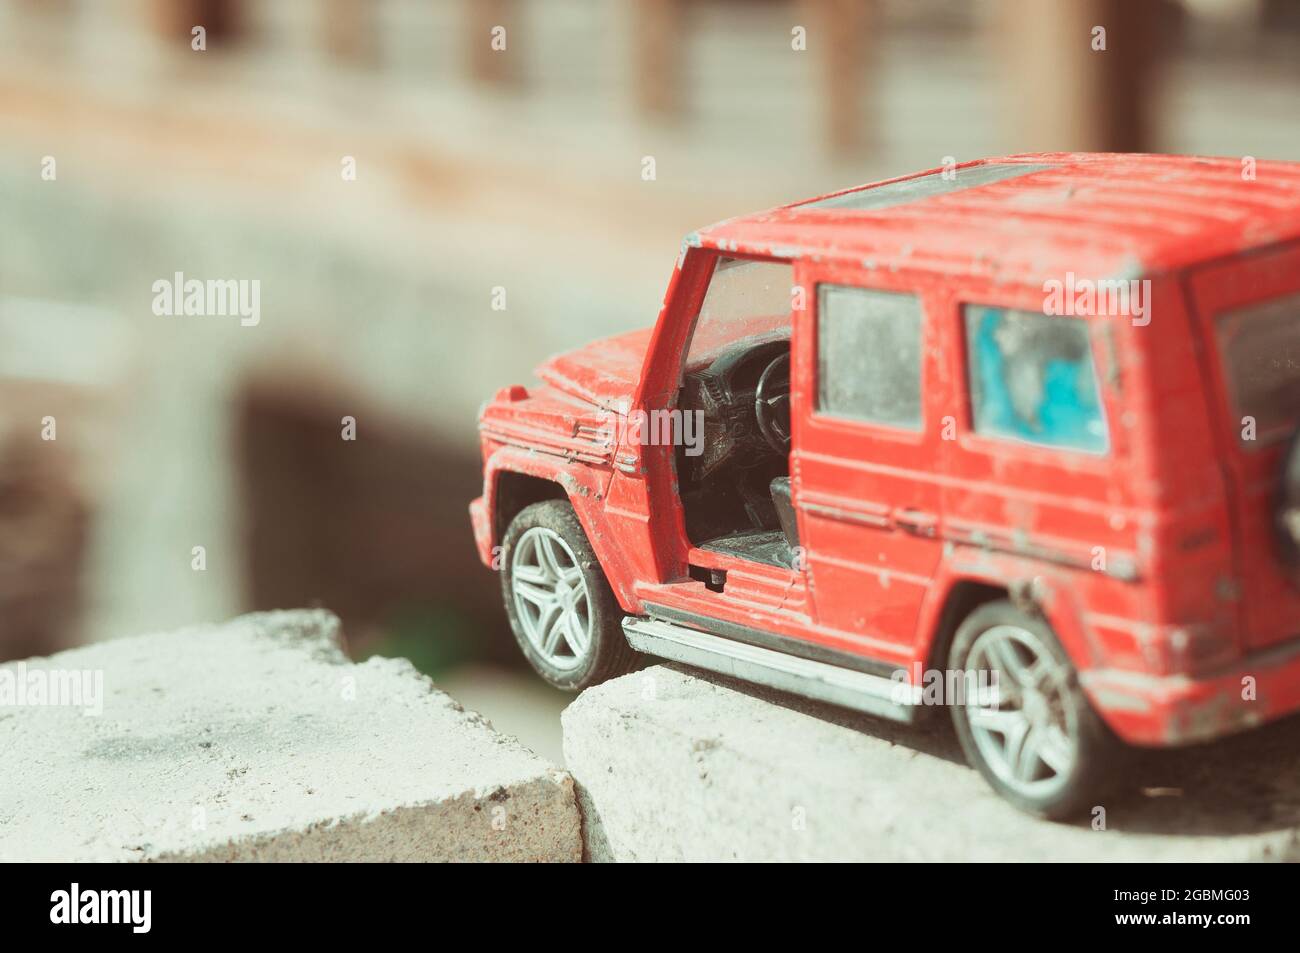 Gros plan d'un jouet de voiture sale cassé Photo Stock - Alamy